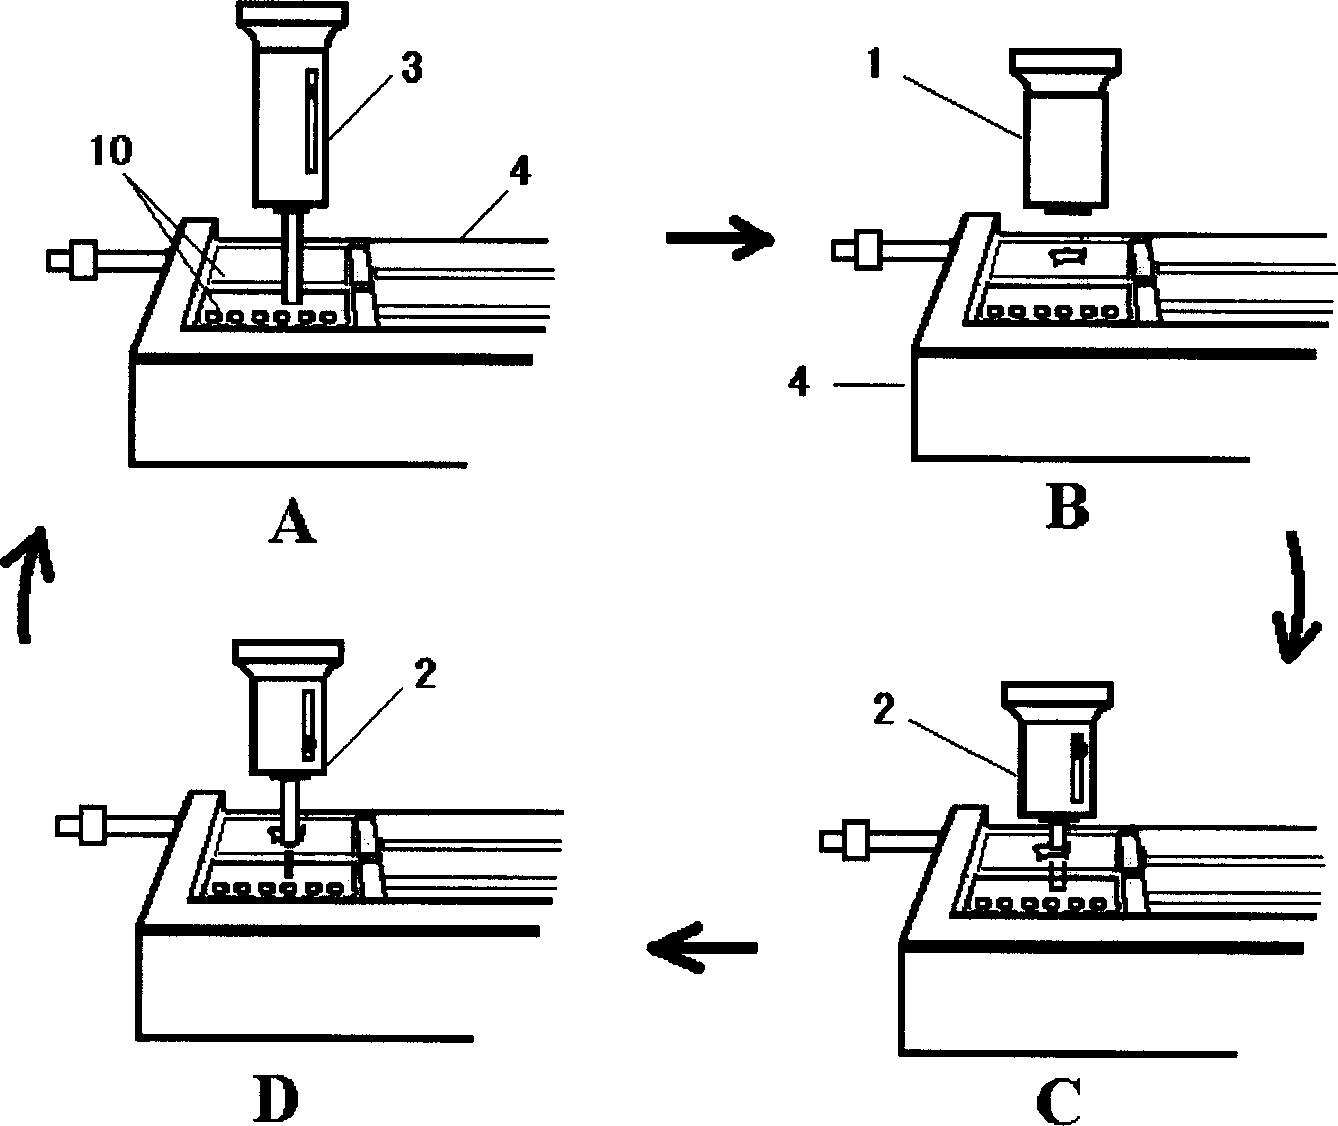 Method for preparing tissue chip